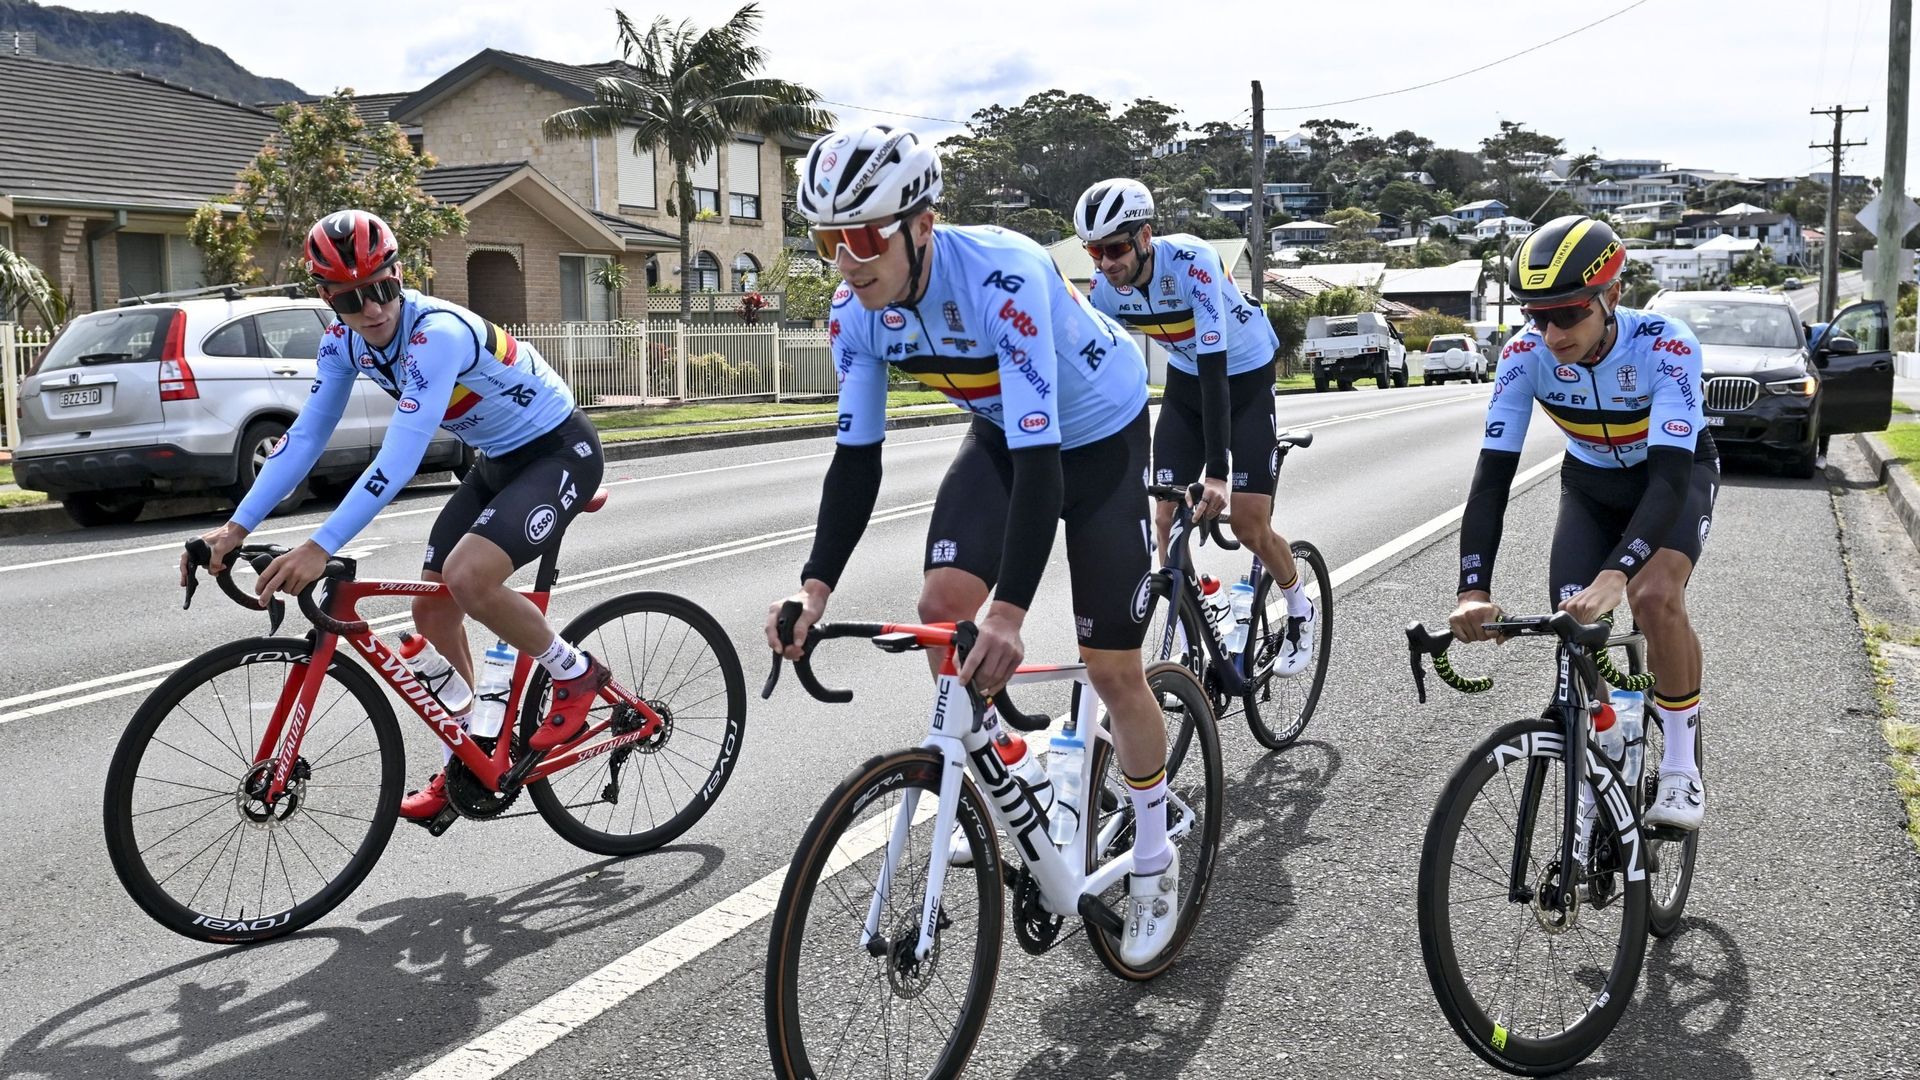 Cyclisme – Mondiaux : L’équipe belge à l’entraînement sur les routes de Wollongong pendant les Championnats du monde en Australie.